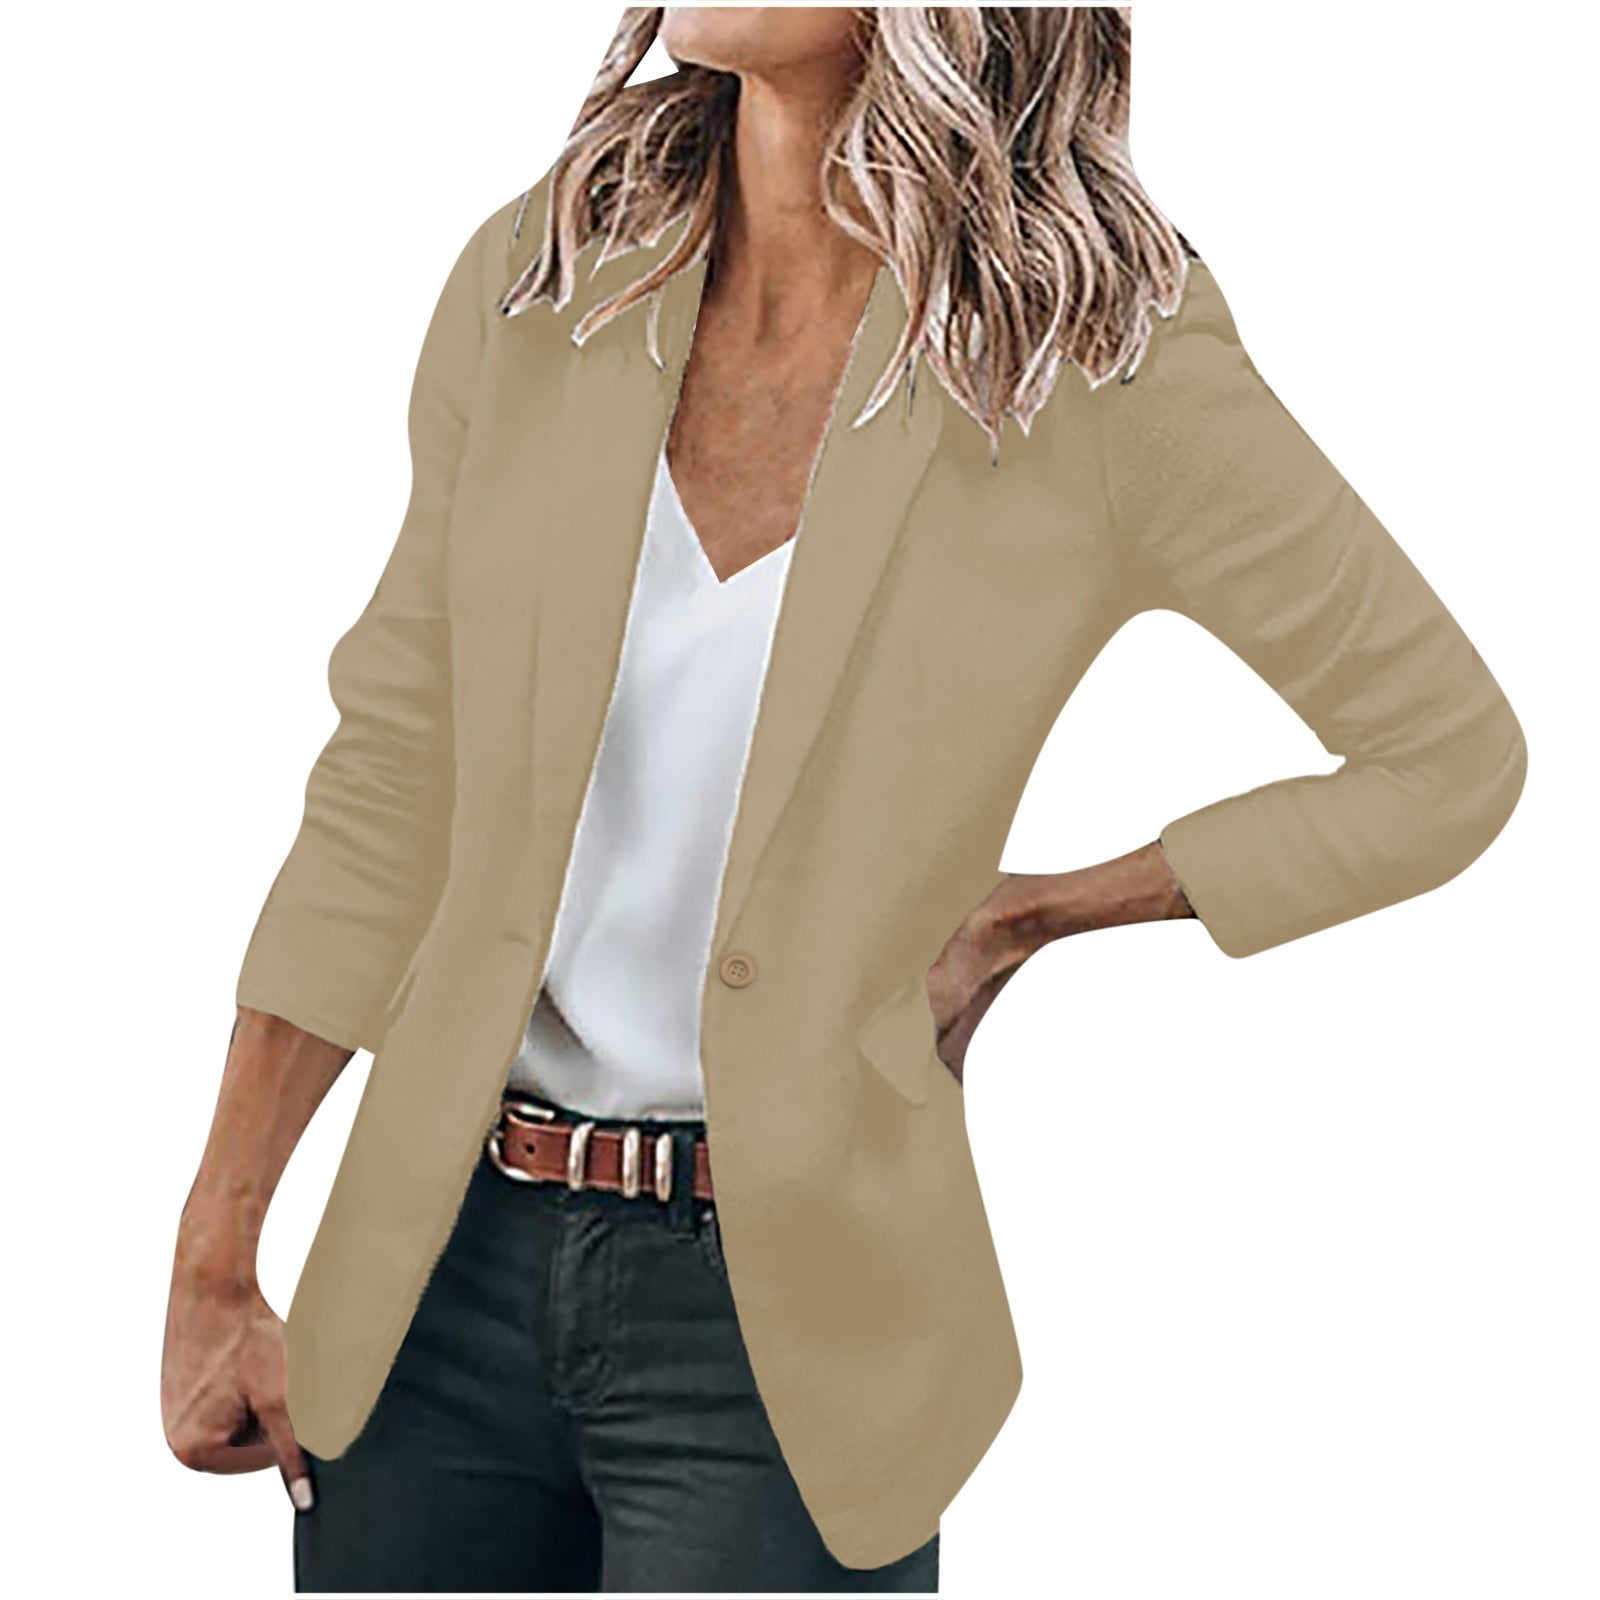 Womens Blazer Suit Top Jacket Casual Smart Ladies Jersey Office Evening Coat